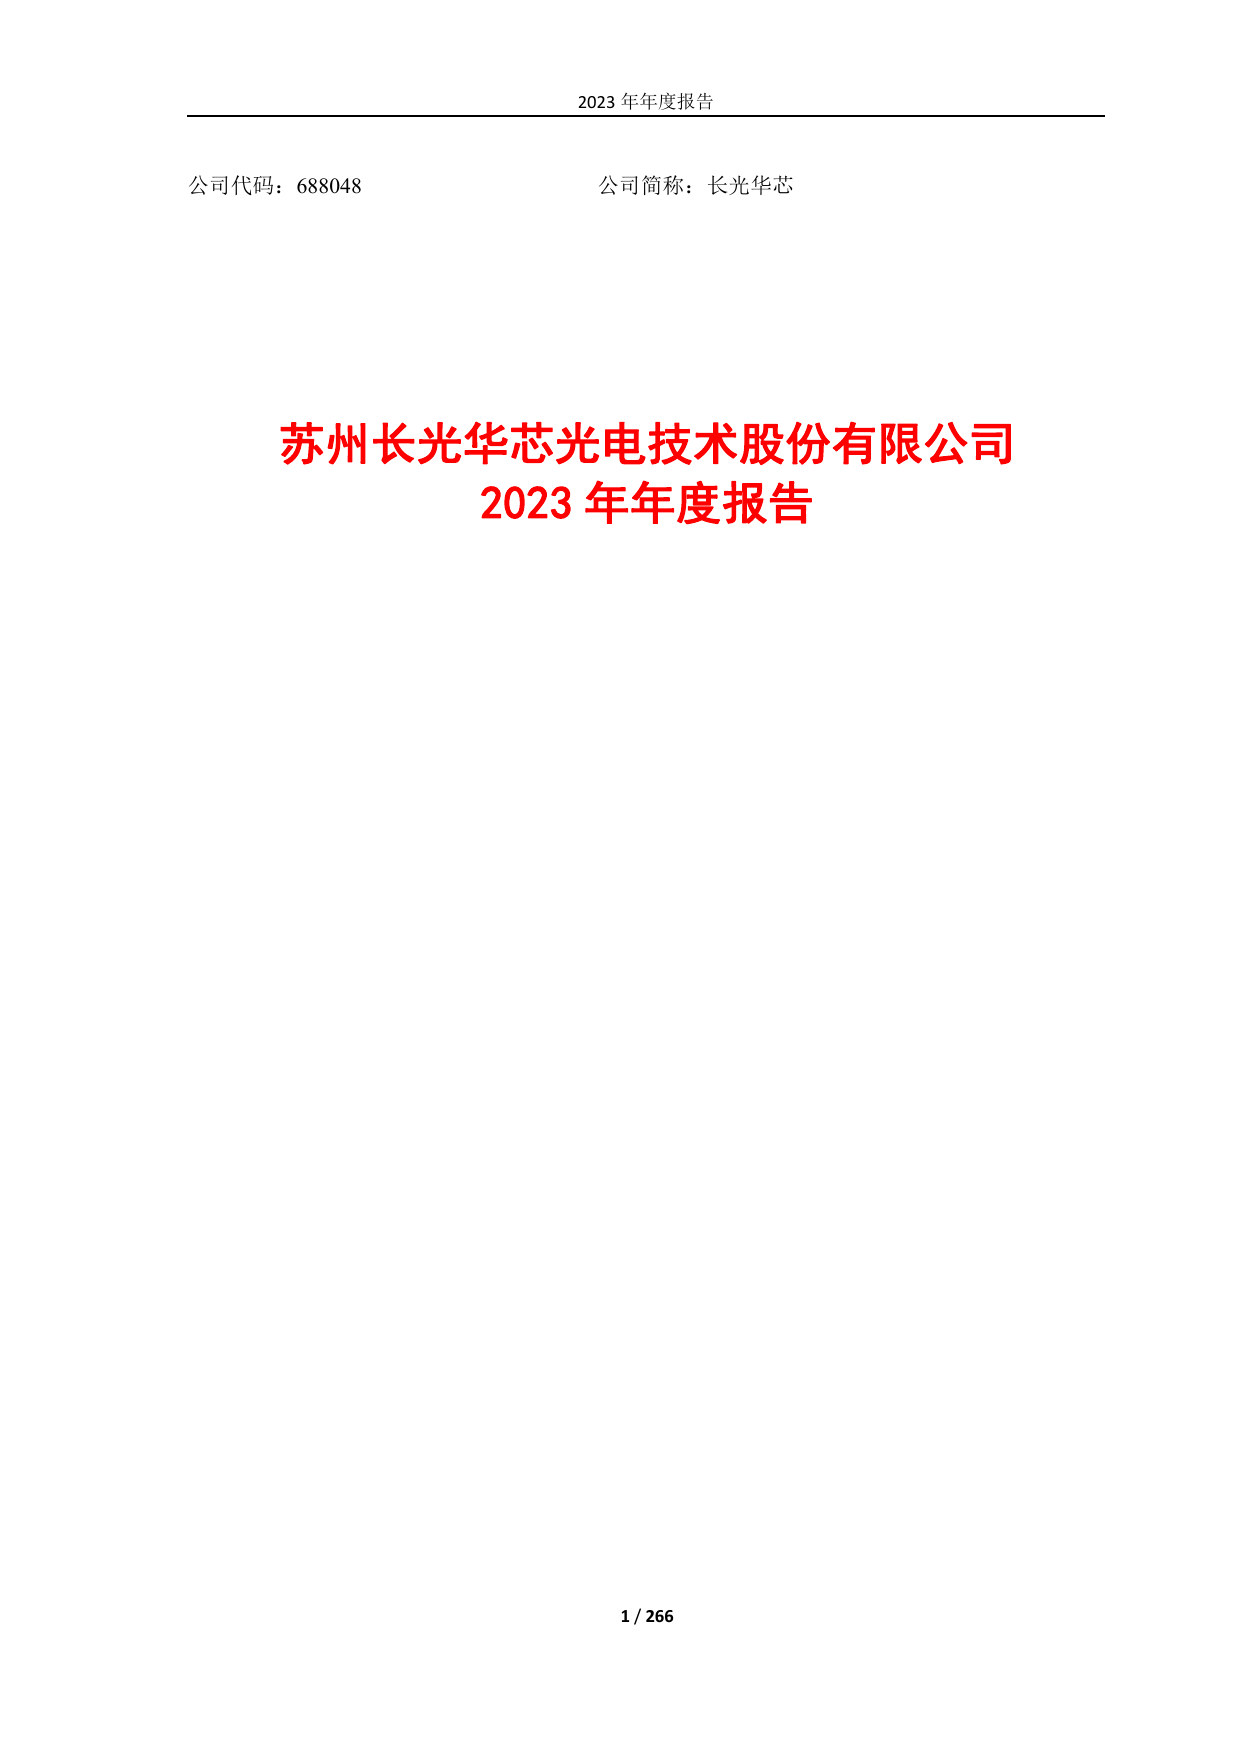 长光华芯2023年年度报告（修订版）.pdf